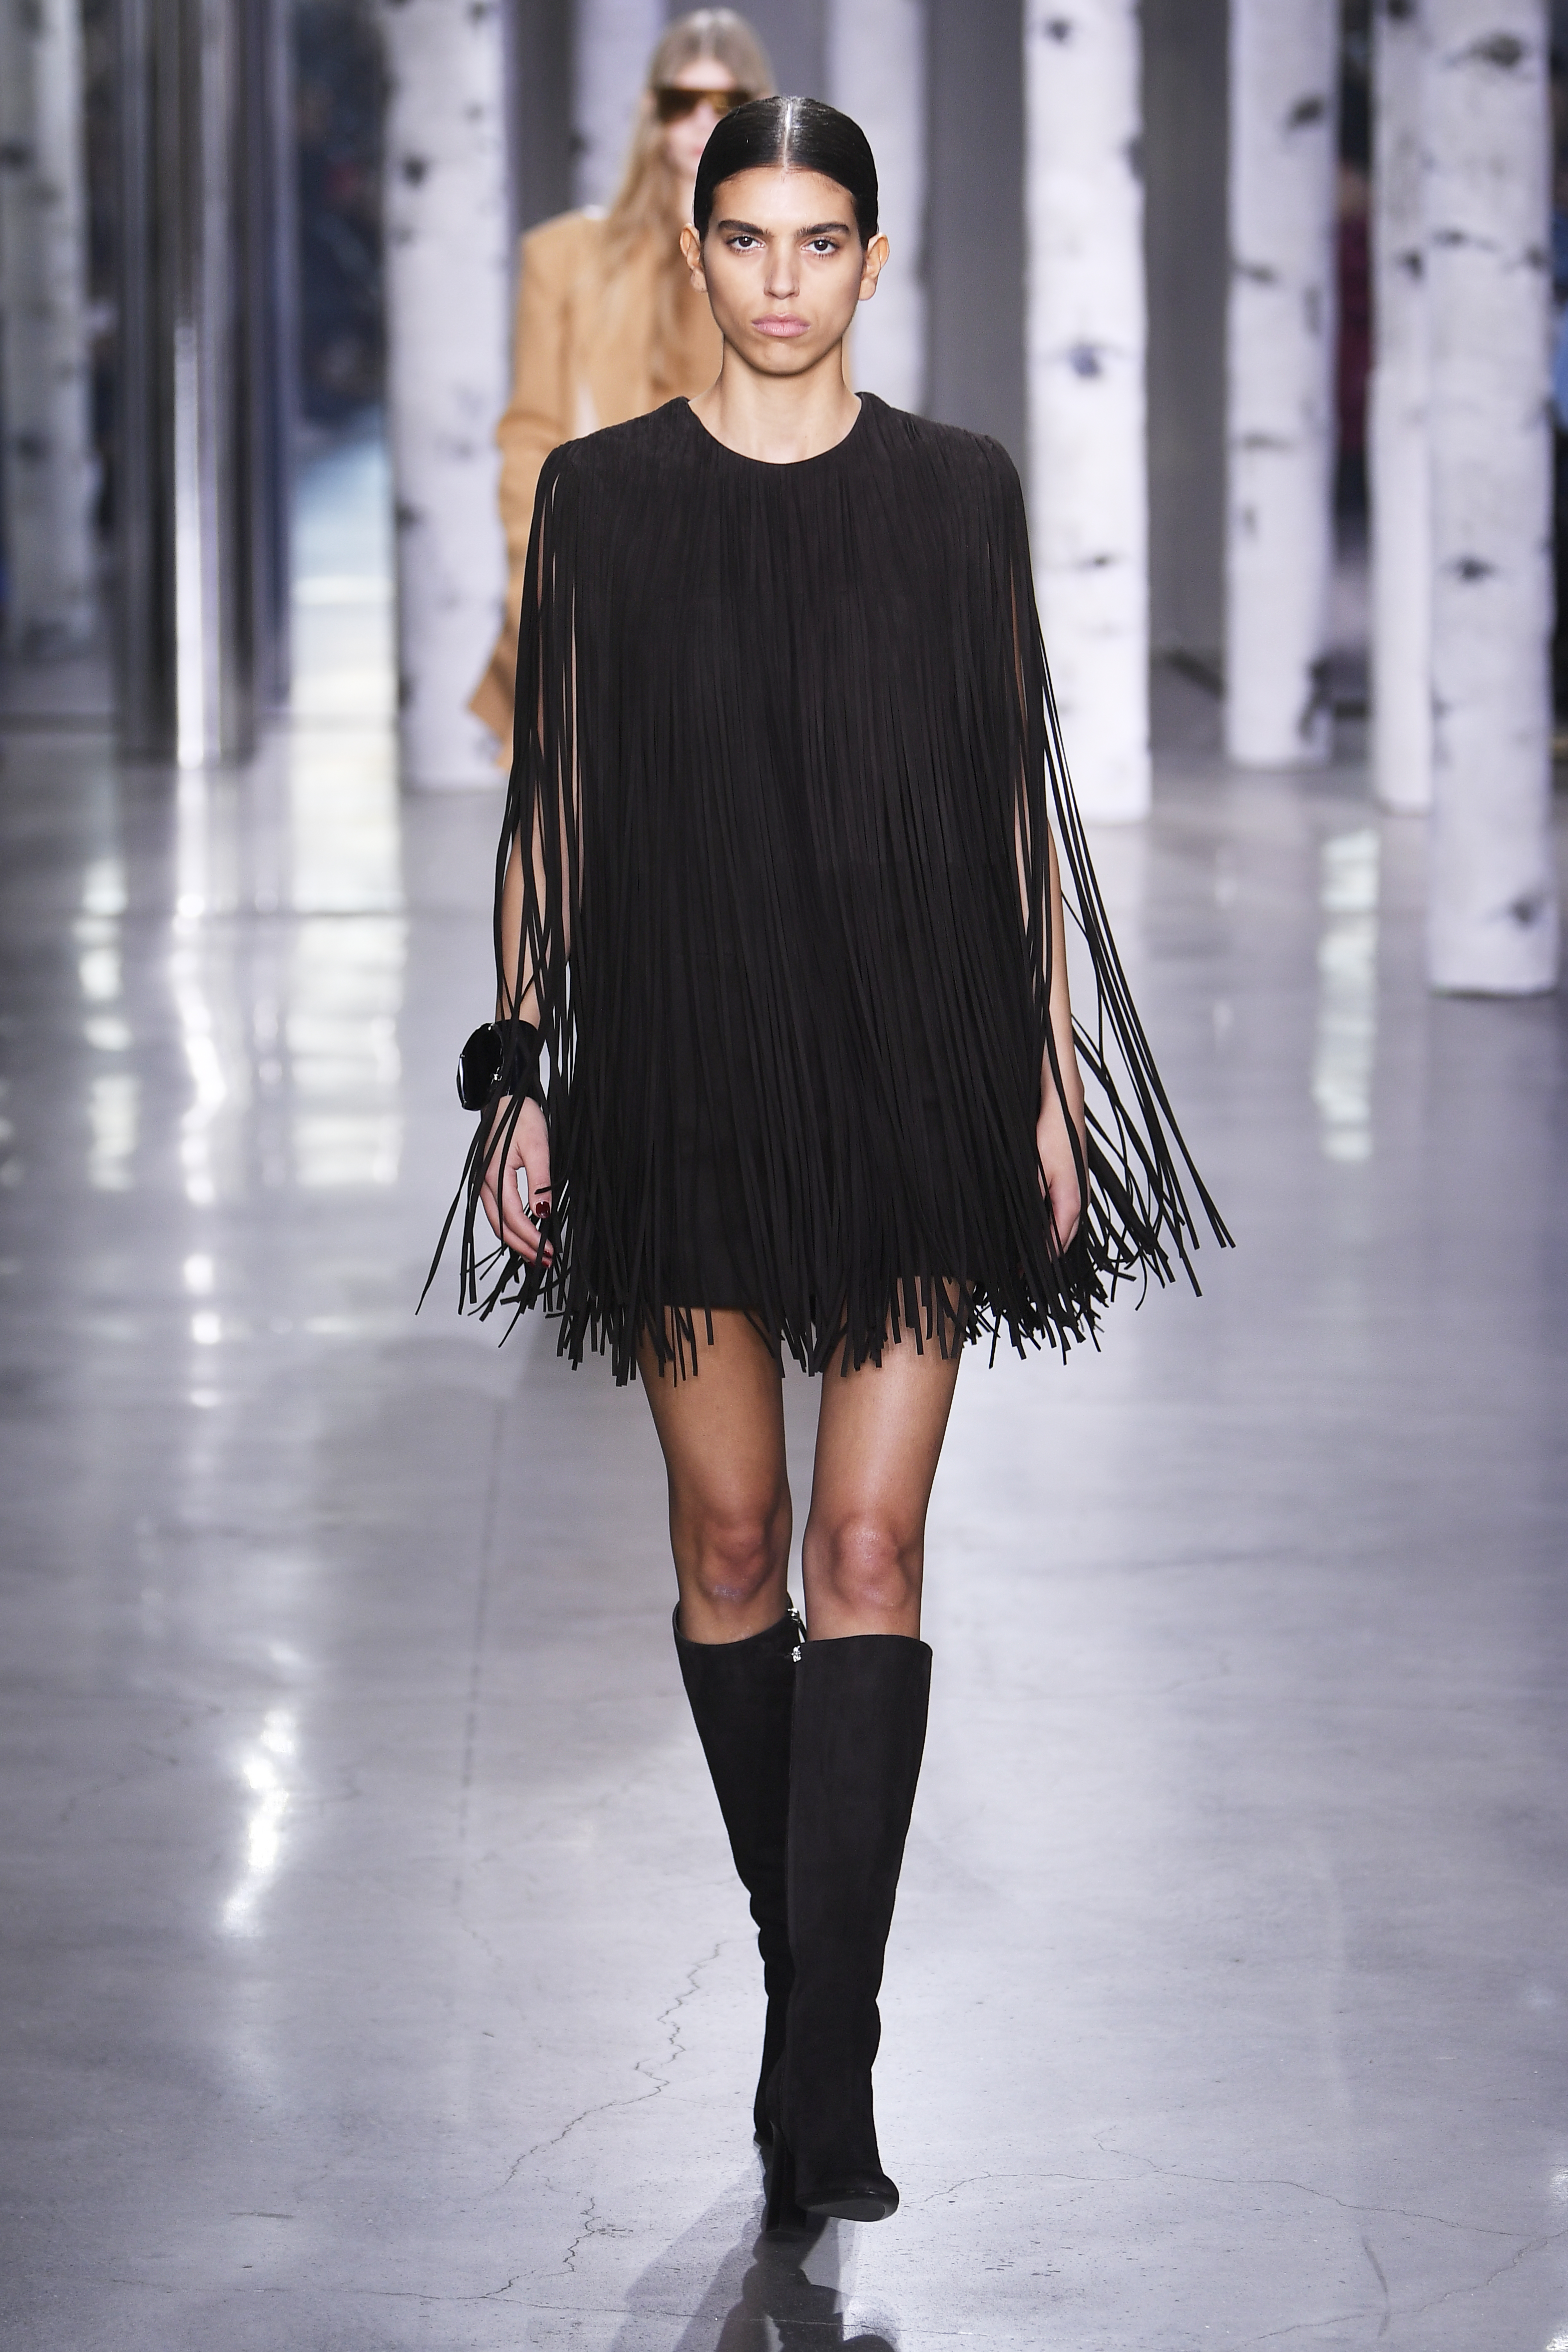 Desfile de outono-inverno 2023 da Michael Kors na semana de moda de Nova York. Modelo usando vestido preto de franjas e bota até o joelho